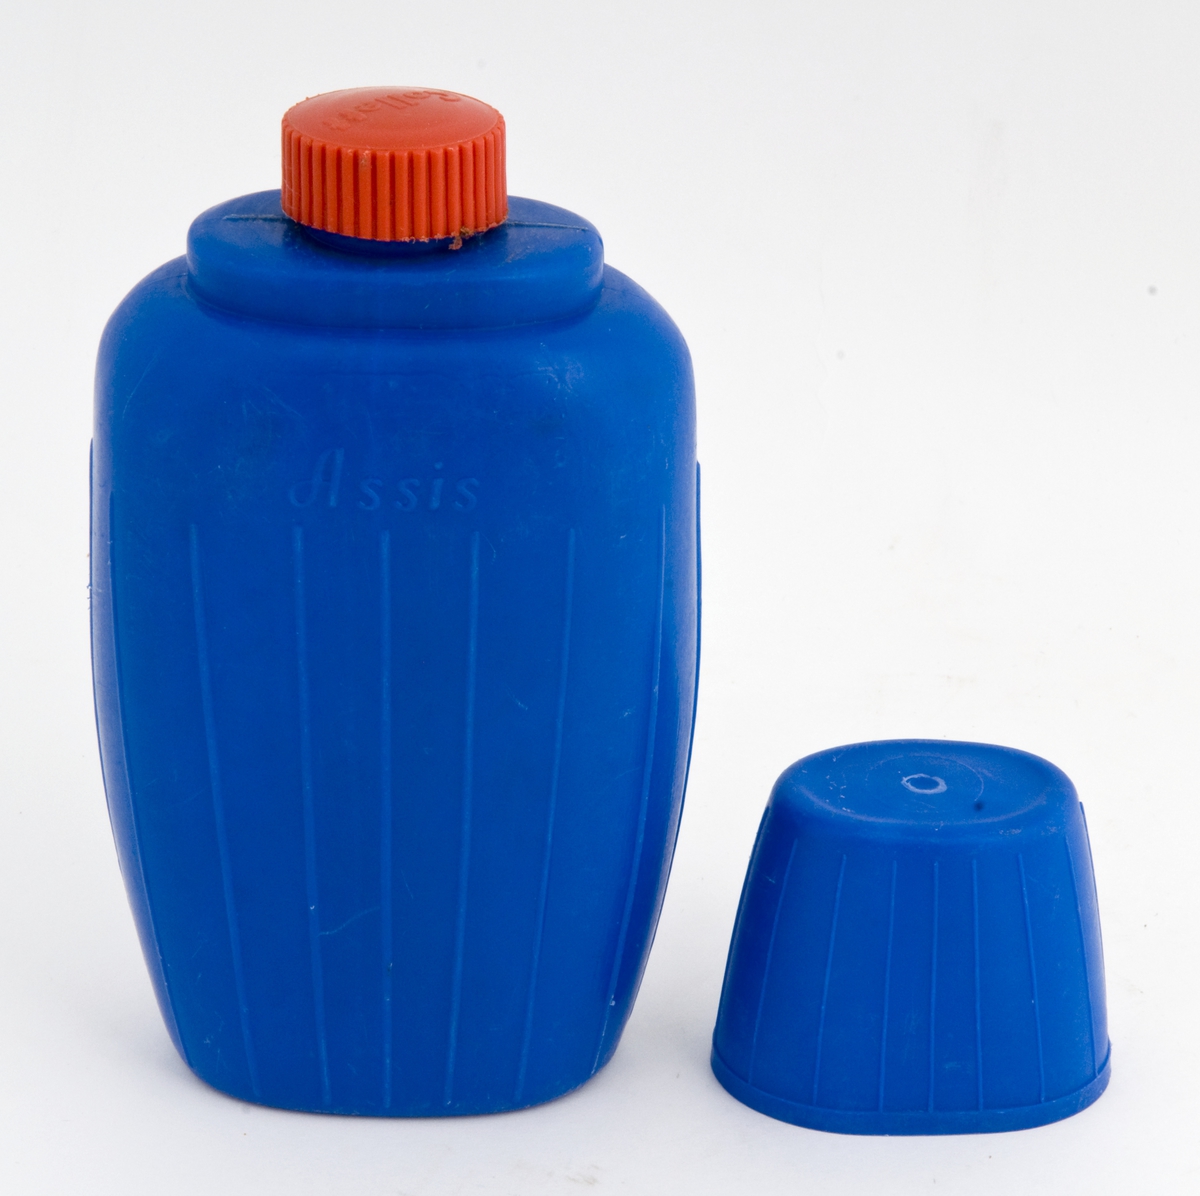 Blå drikkeflaske av plast med kopp og rød skrukork.